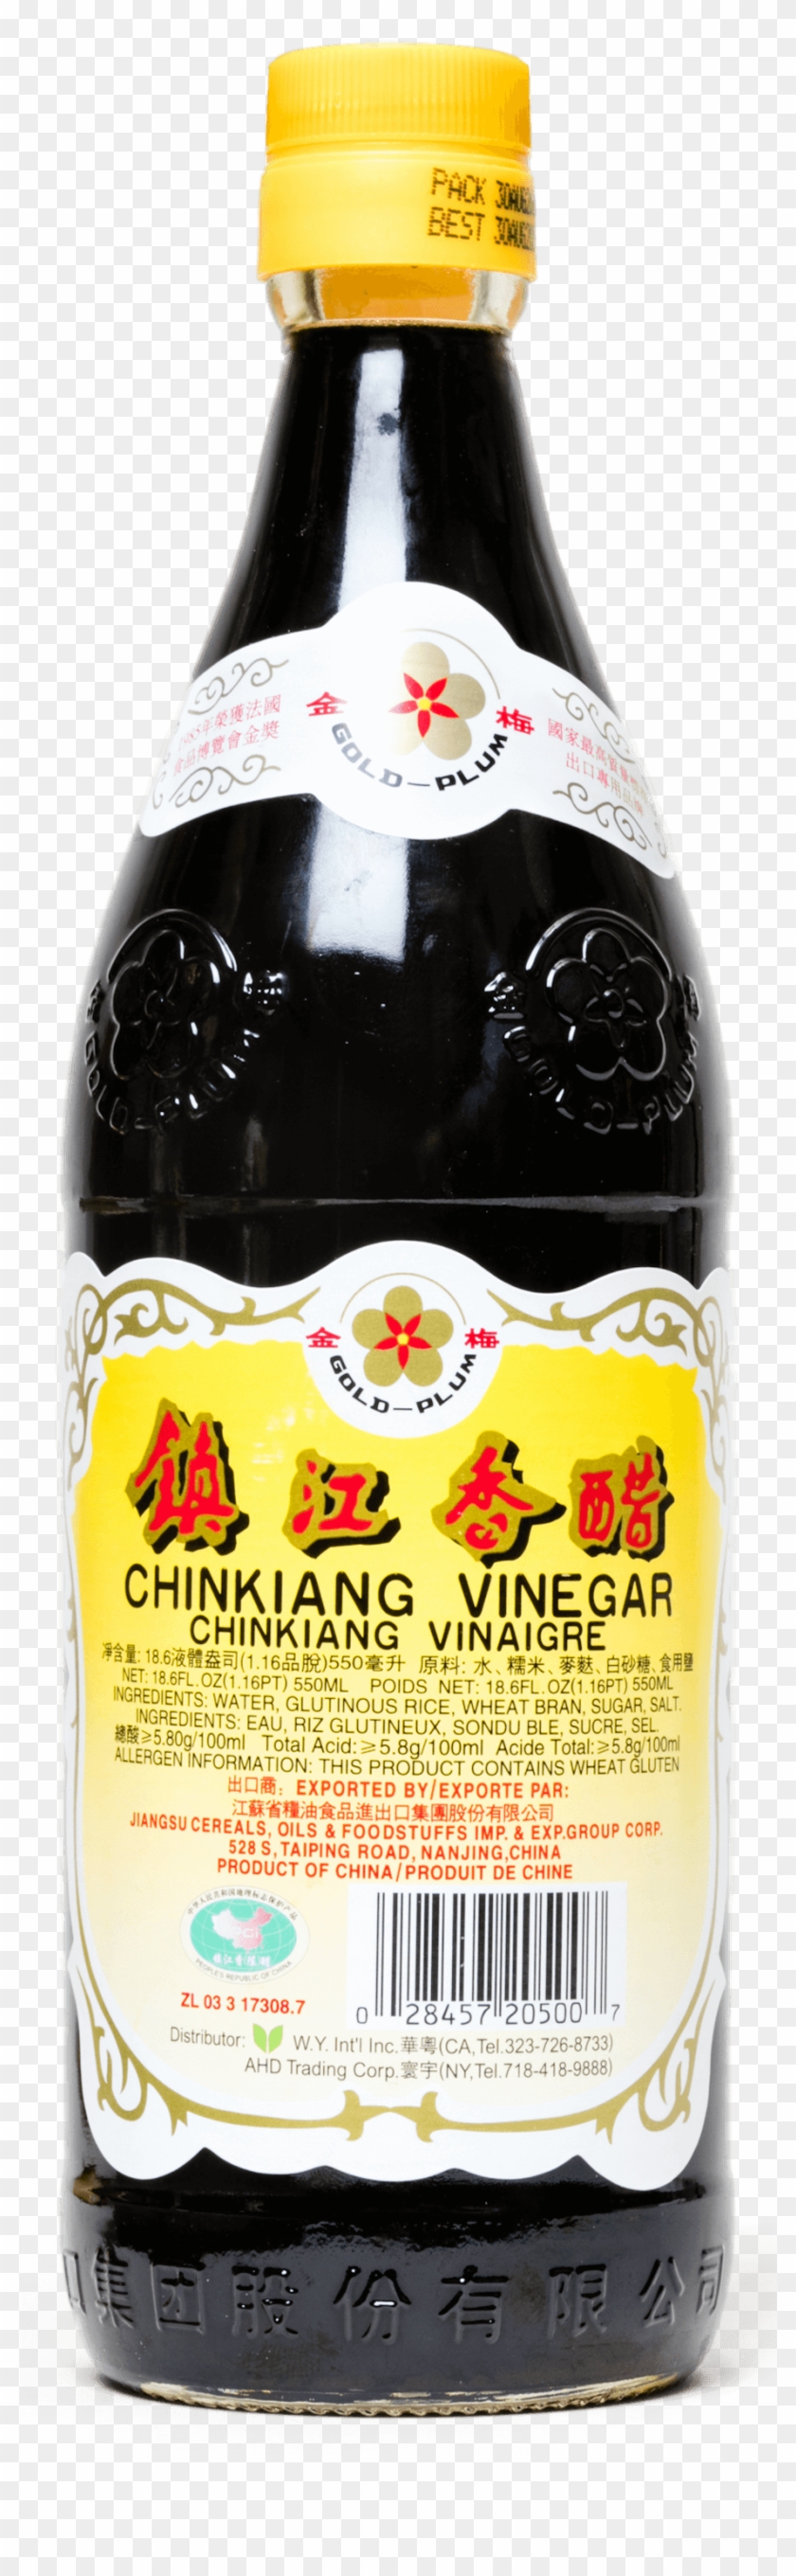 Chinese Black Vinegar - Black Vinegar Clipart #5763940